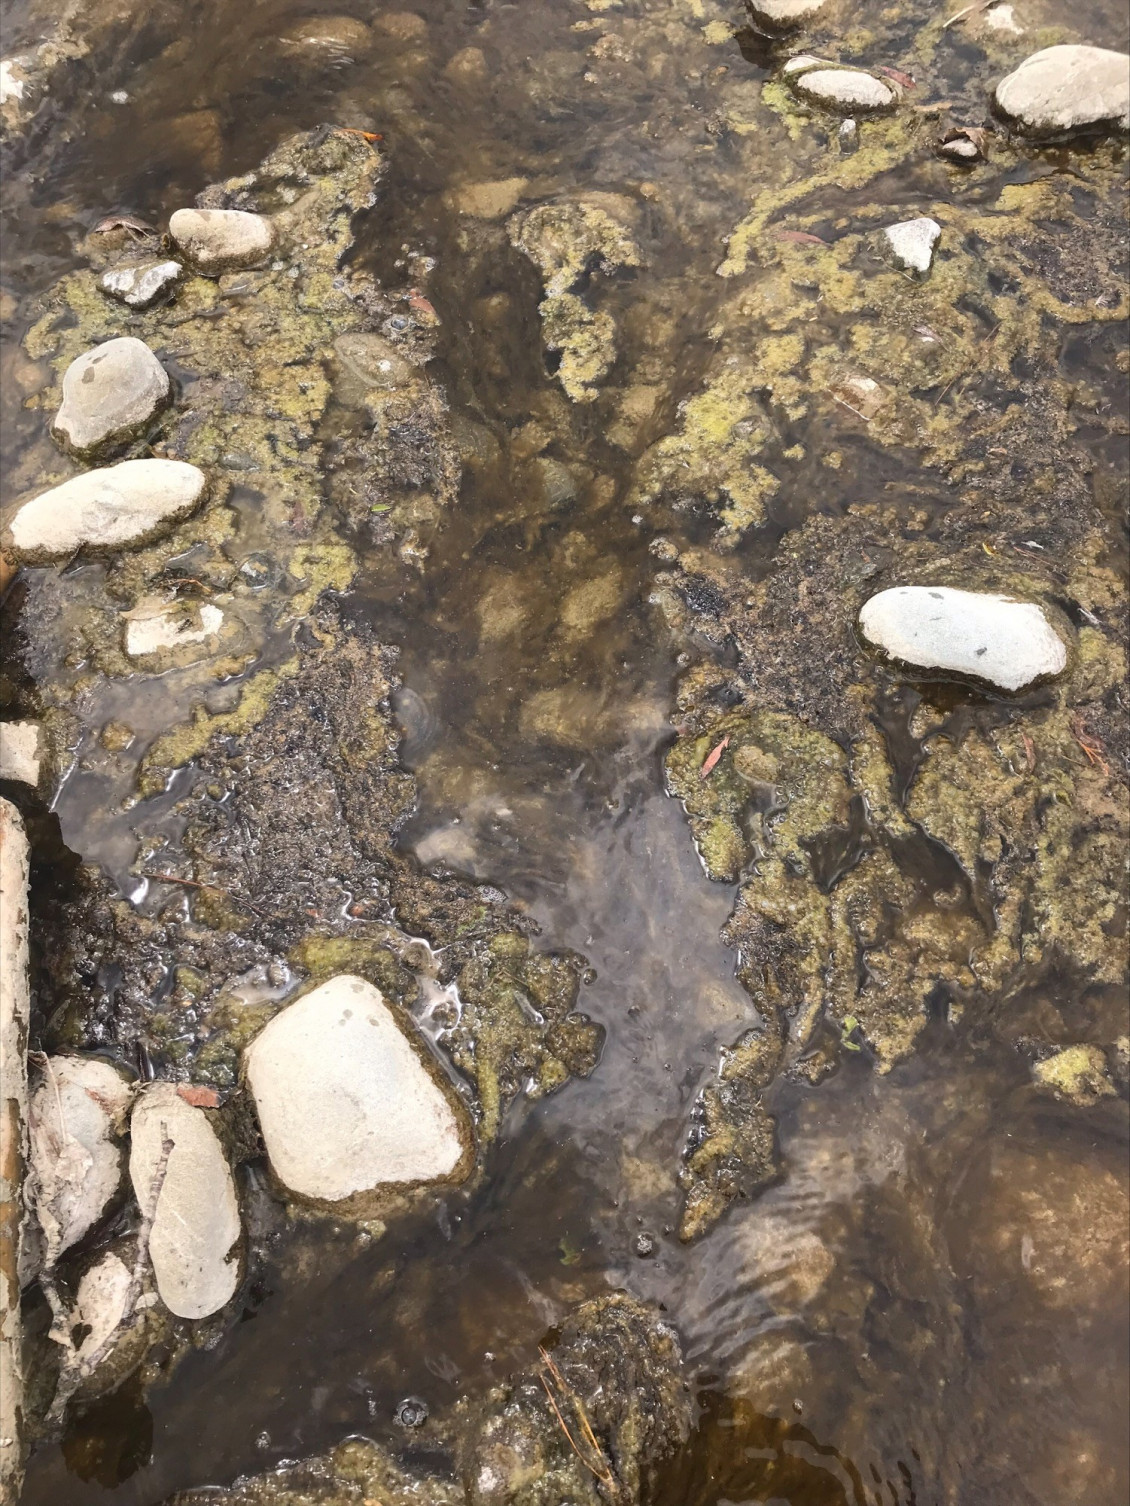 Toxic algae in the Hutt River